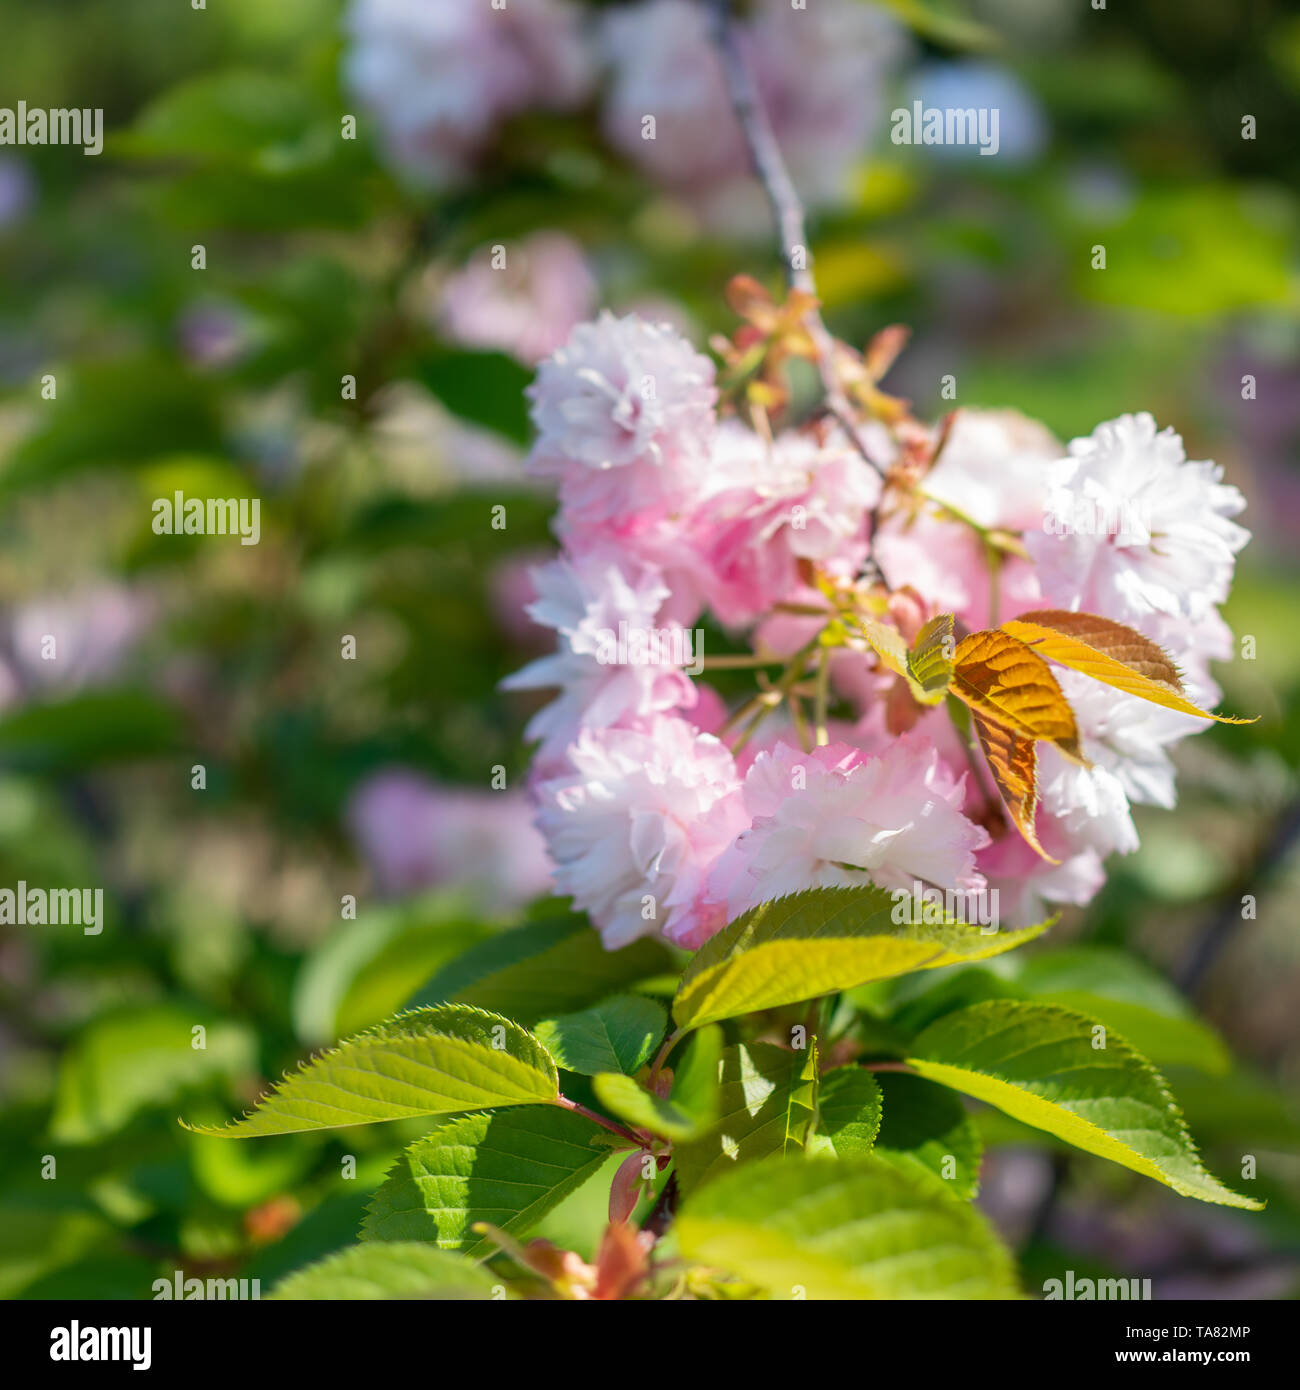 Grune Blatter Und Blute Pink Sakura Bluten In Blured Hintergrund Hintergrundbild Mit Schonen Blumen Stockfotografie Alamy